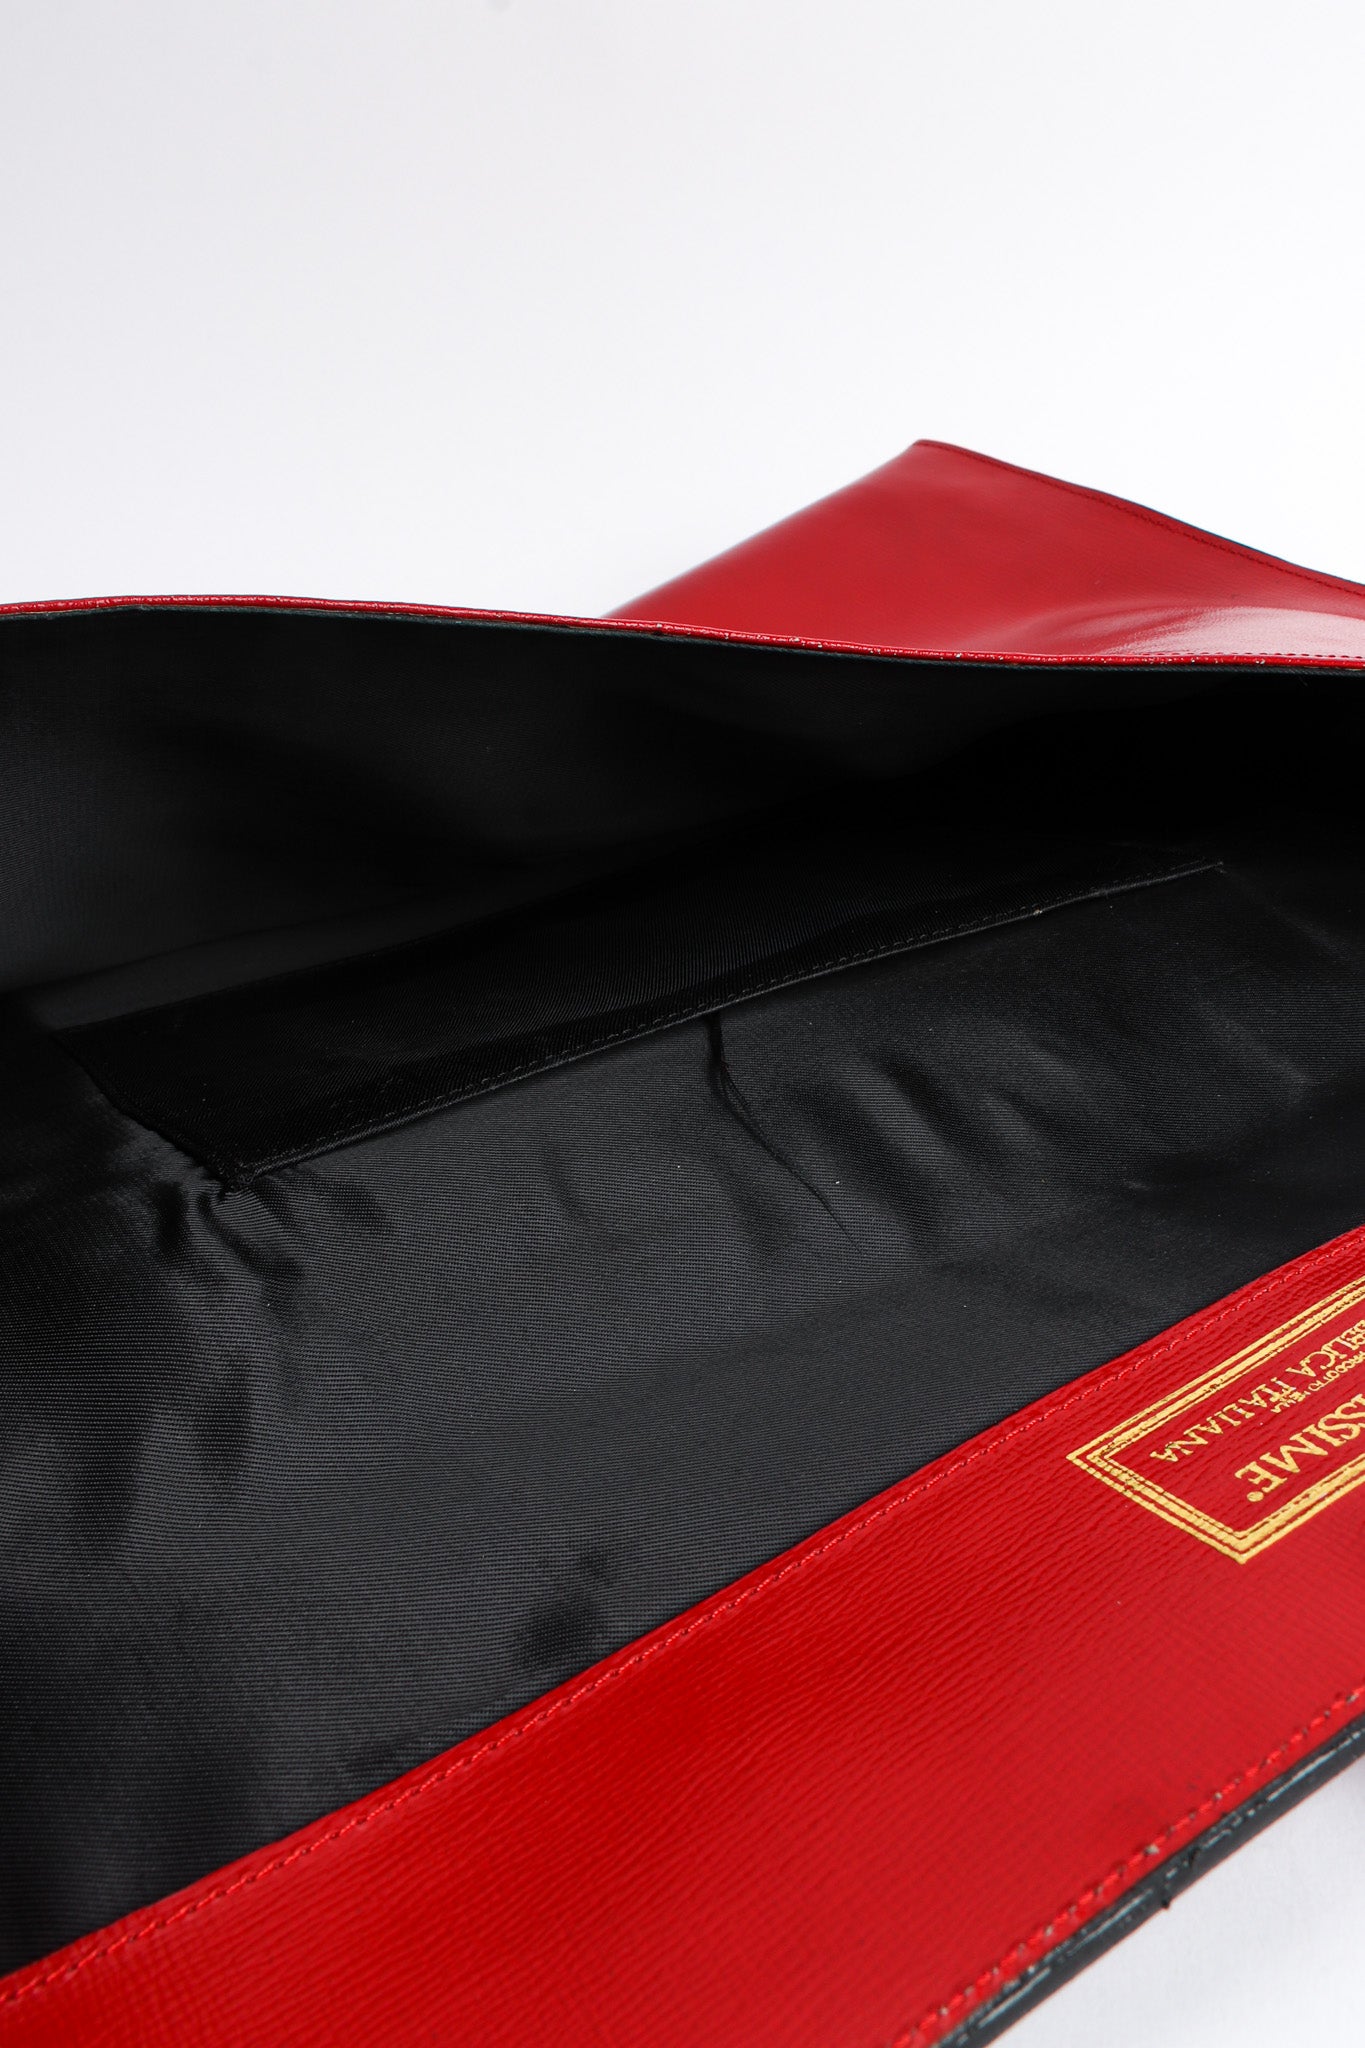 Vintage Fendi for Fendissime Oversized Leather Envelope Bag inside/lining @ Recess LA